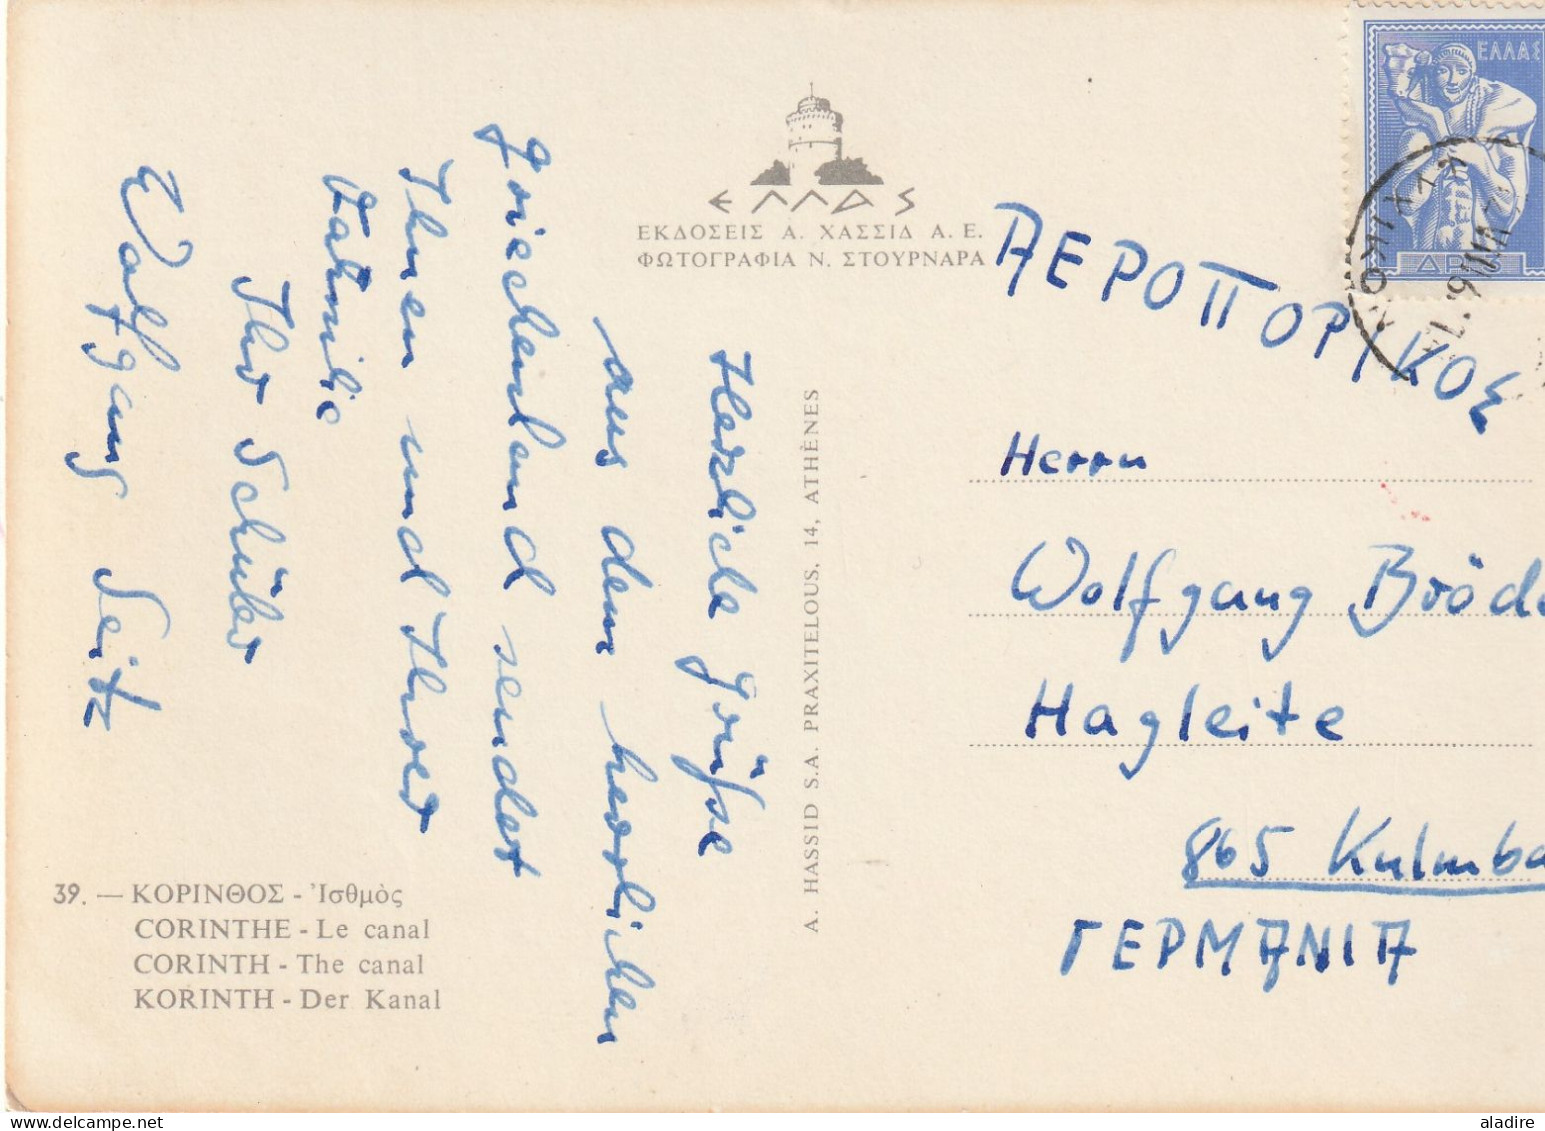 Ἑλλάς - GREECE - GRECE - 1861 / 1961 - collection of 4 old letters and cards - 8 scans